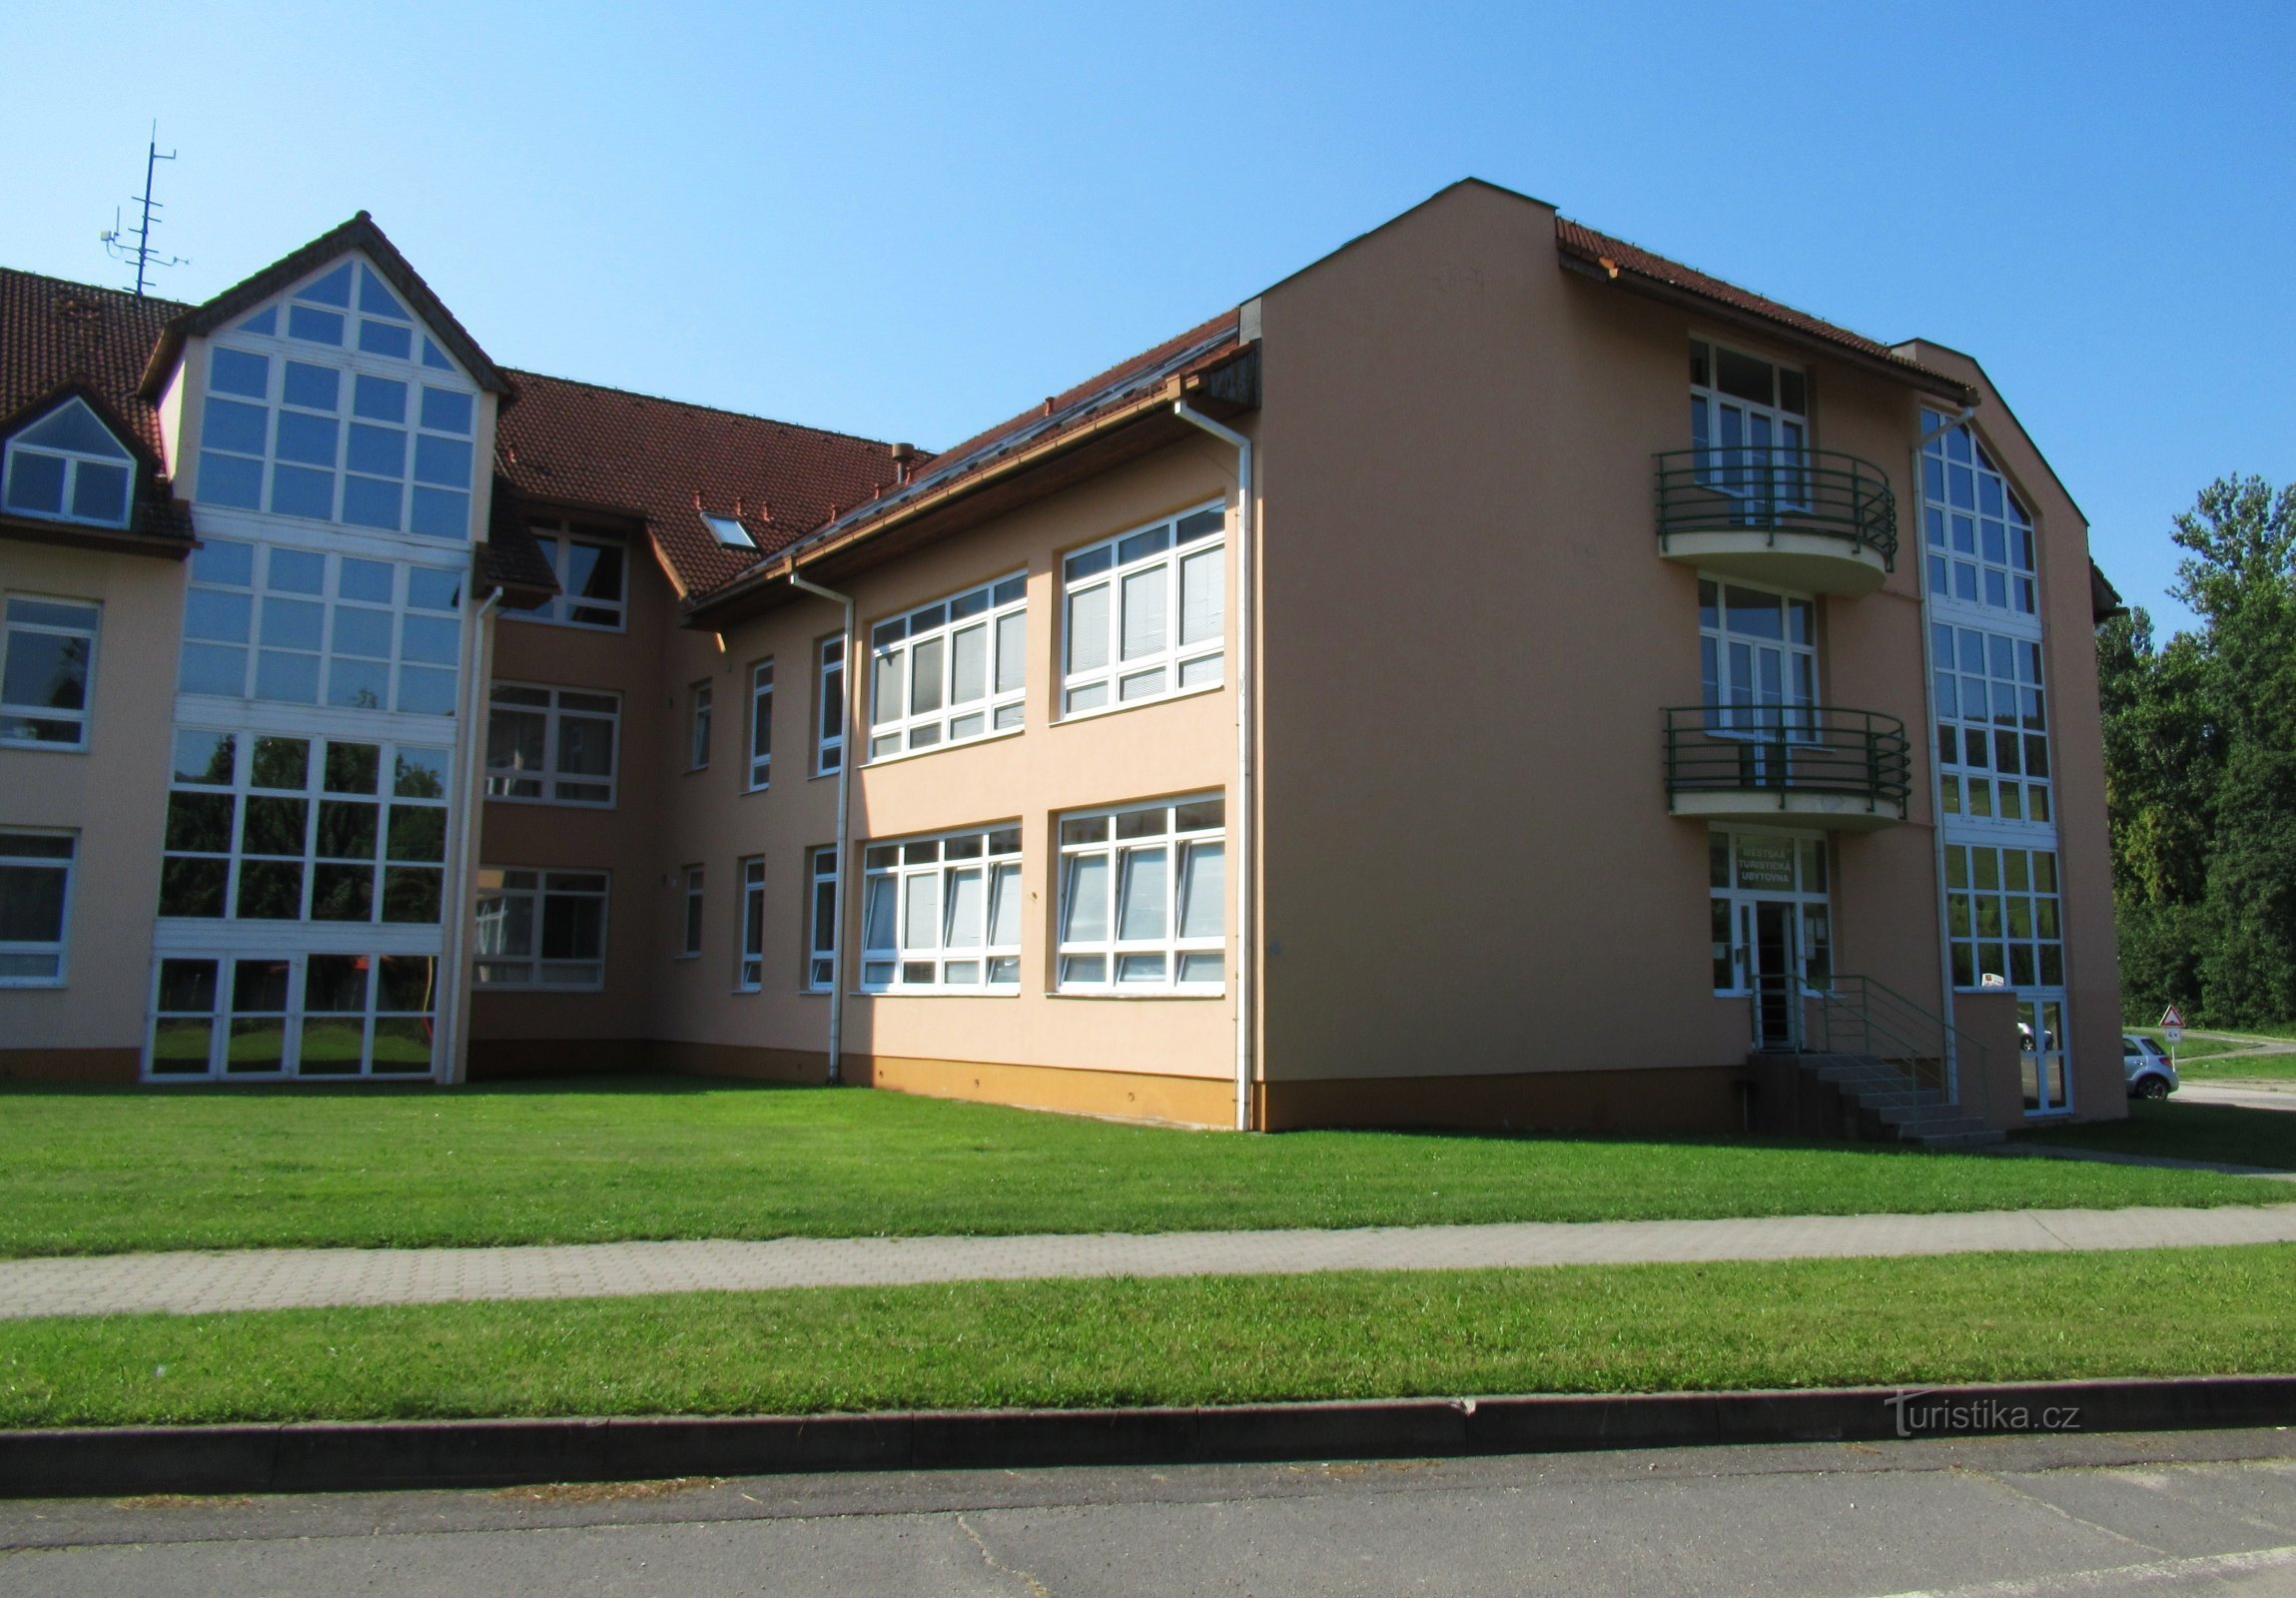 Olcsó szállás Wallachia Brumovban - Hostel az iskola közelében